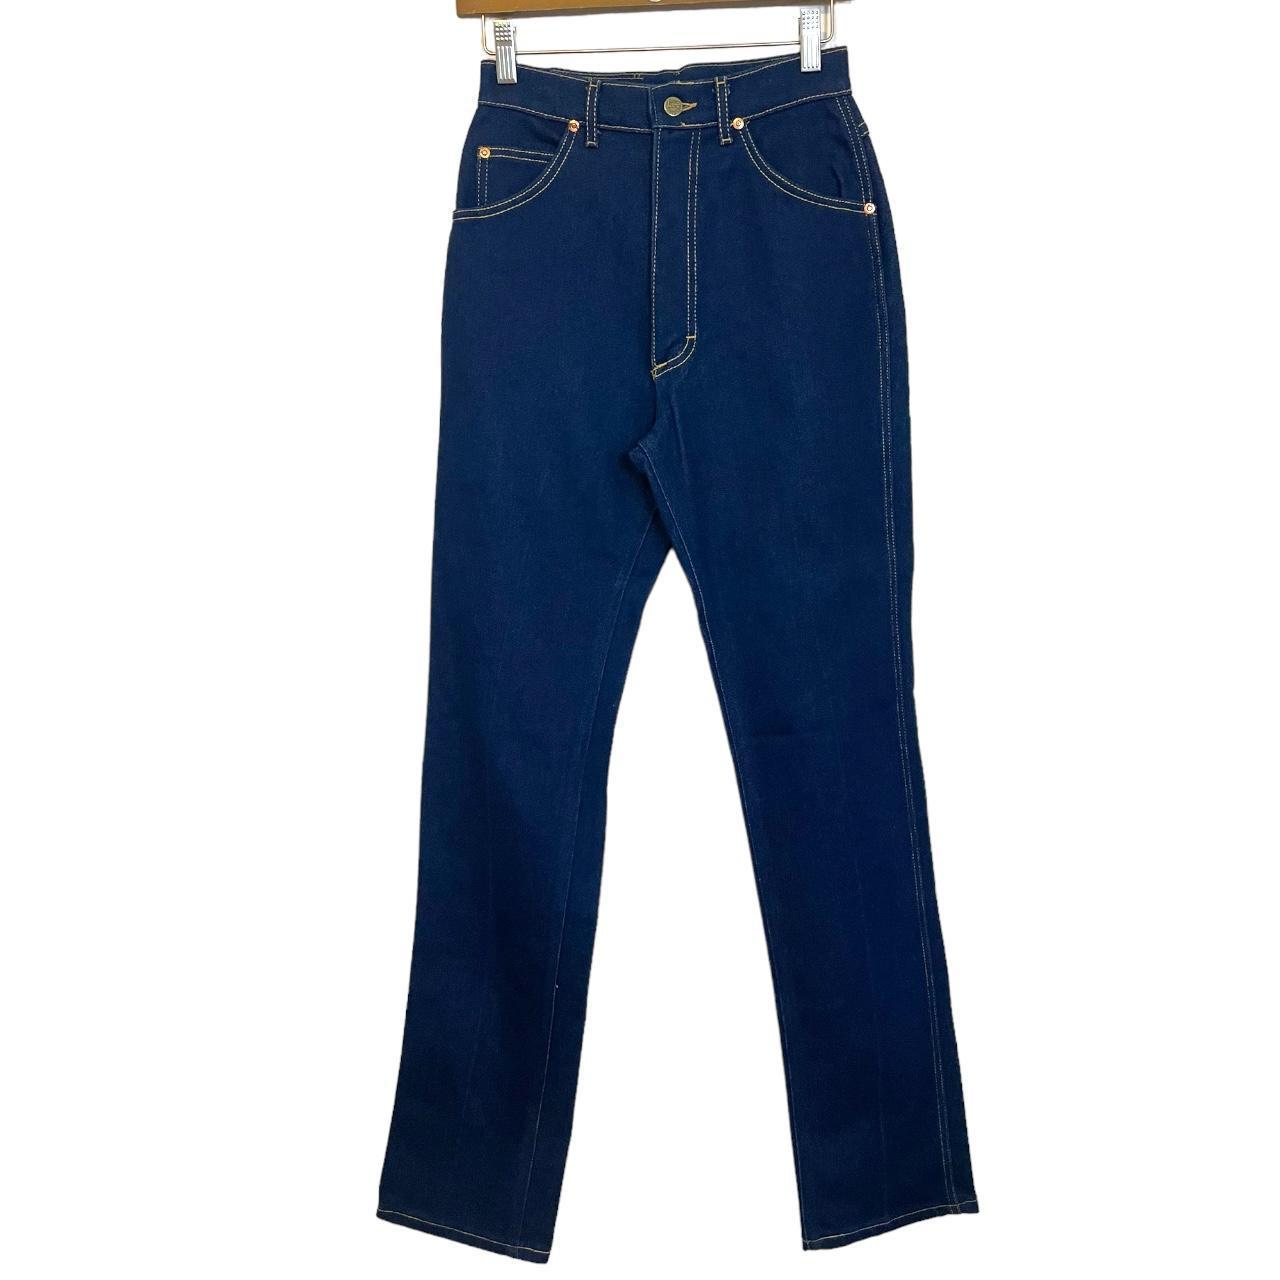 Vintage Lee Jeans Deadstock 80s vintage jeans -... - Depop